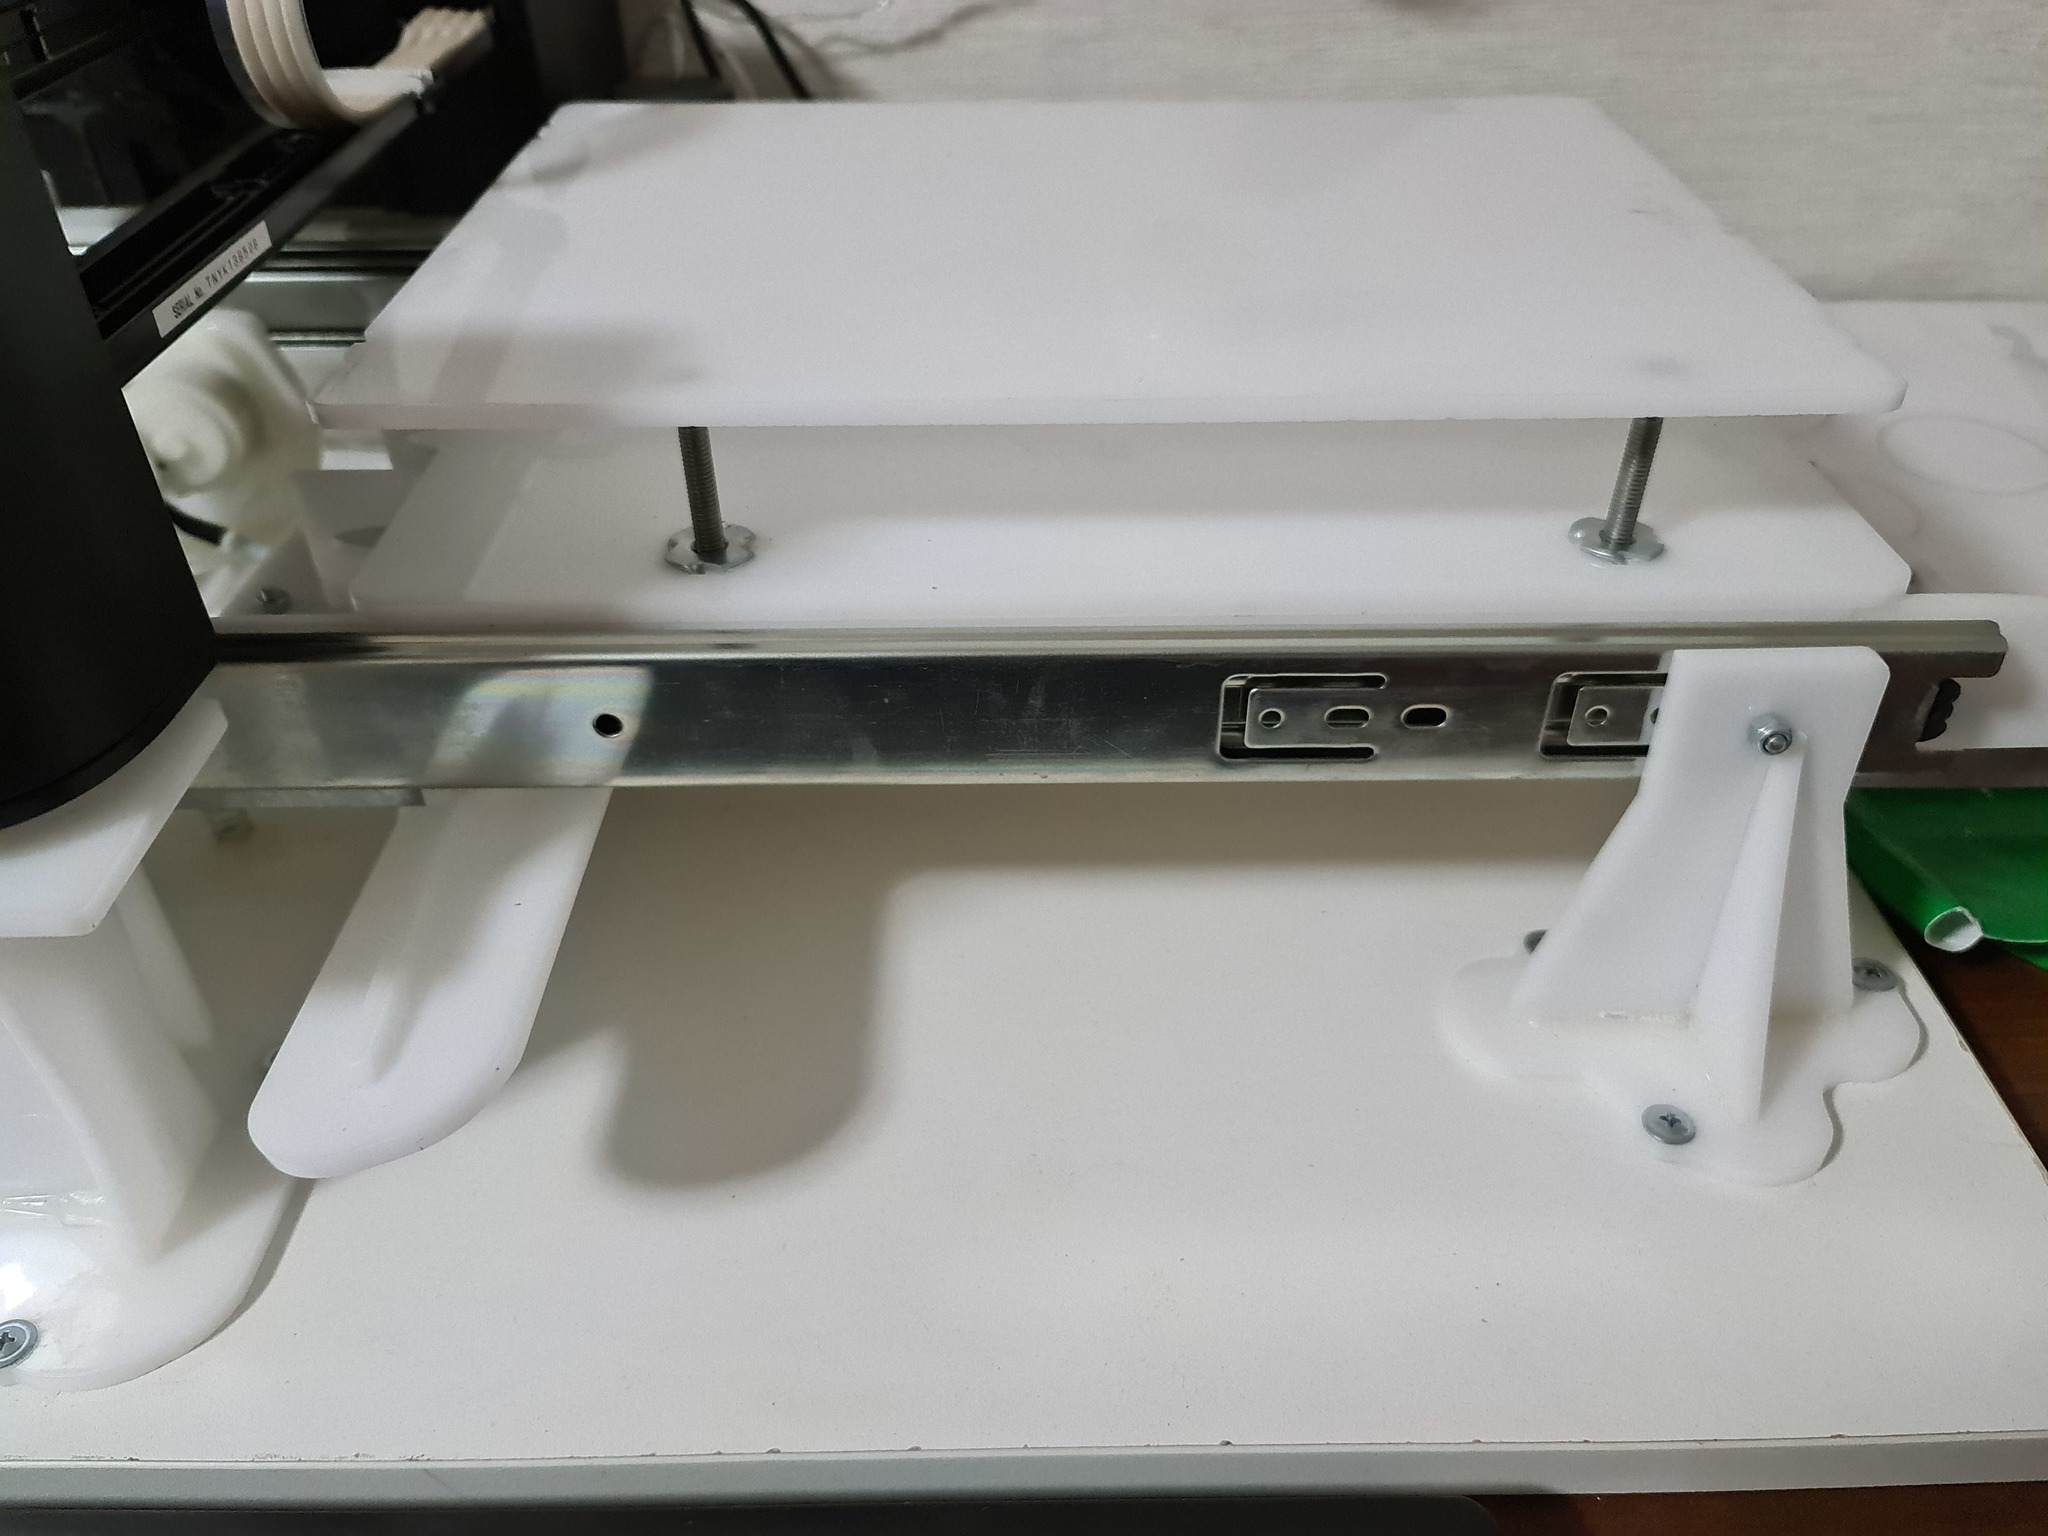 MOTIONJET PRO 1310+ планшетный принтер для металлографики с вакуумной нагревательной плитой